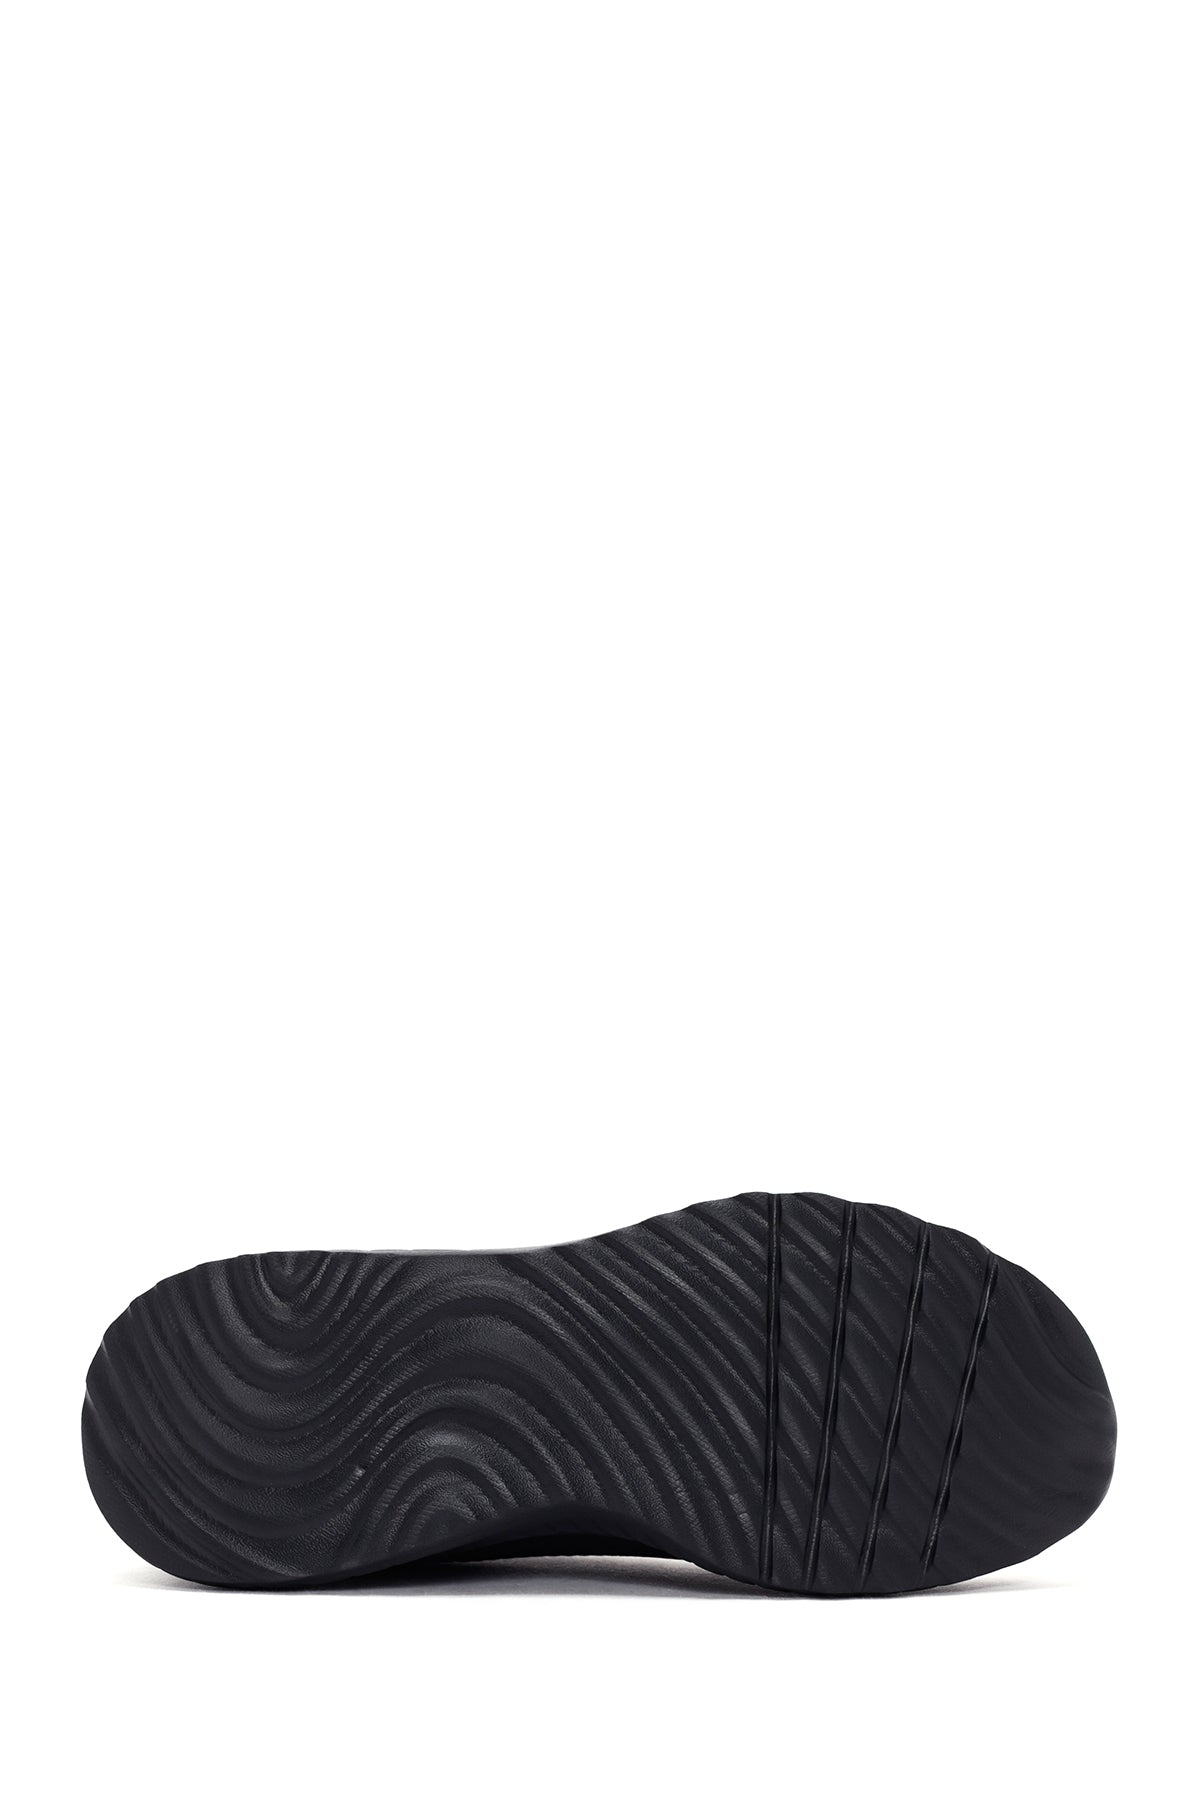 Skechers Kadın Siyah Kumaş Ayakkabı